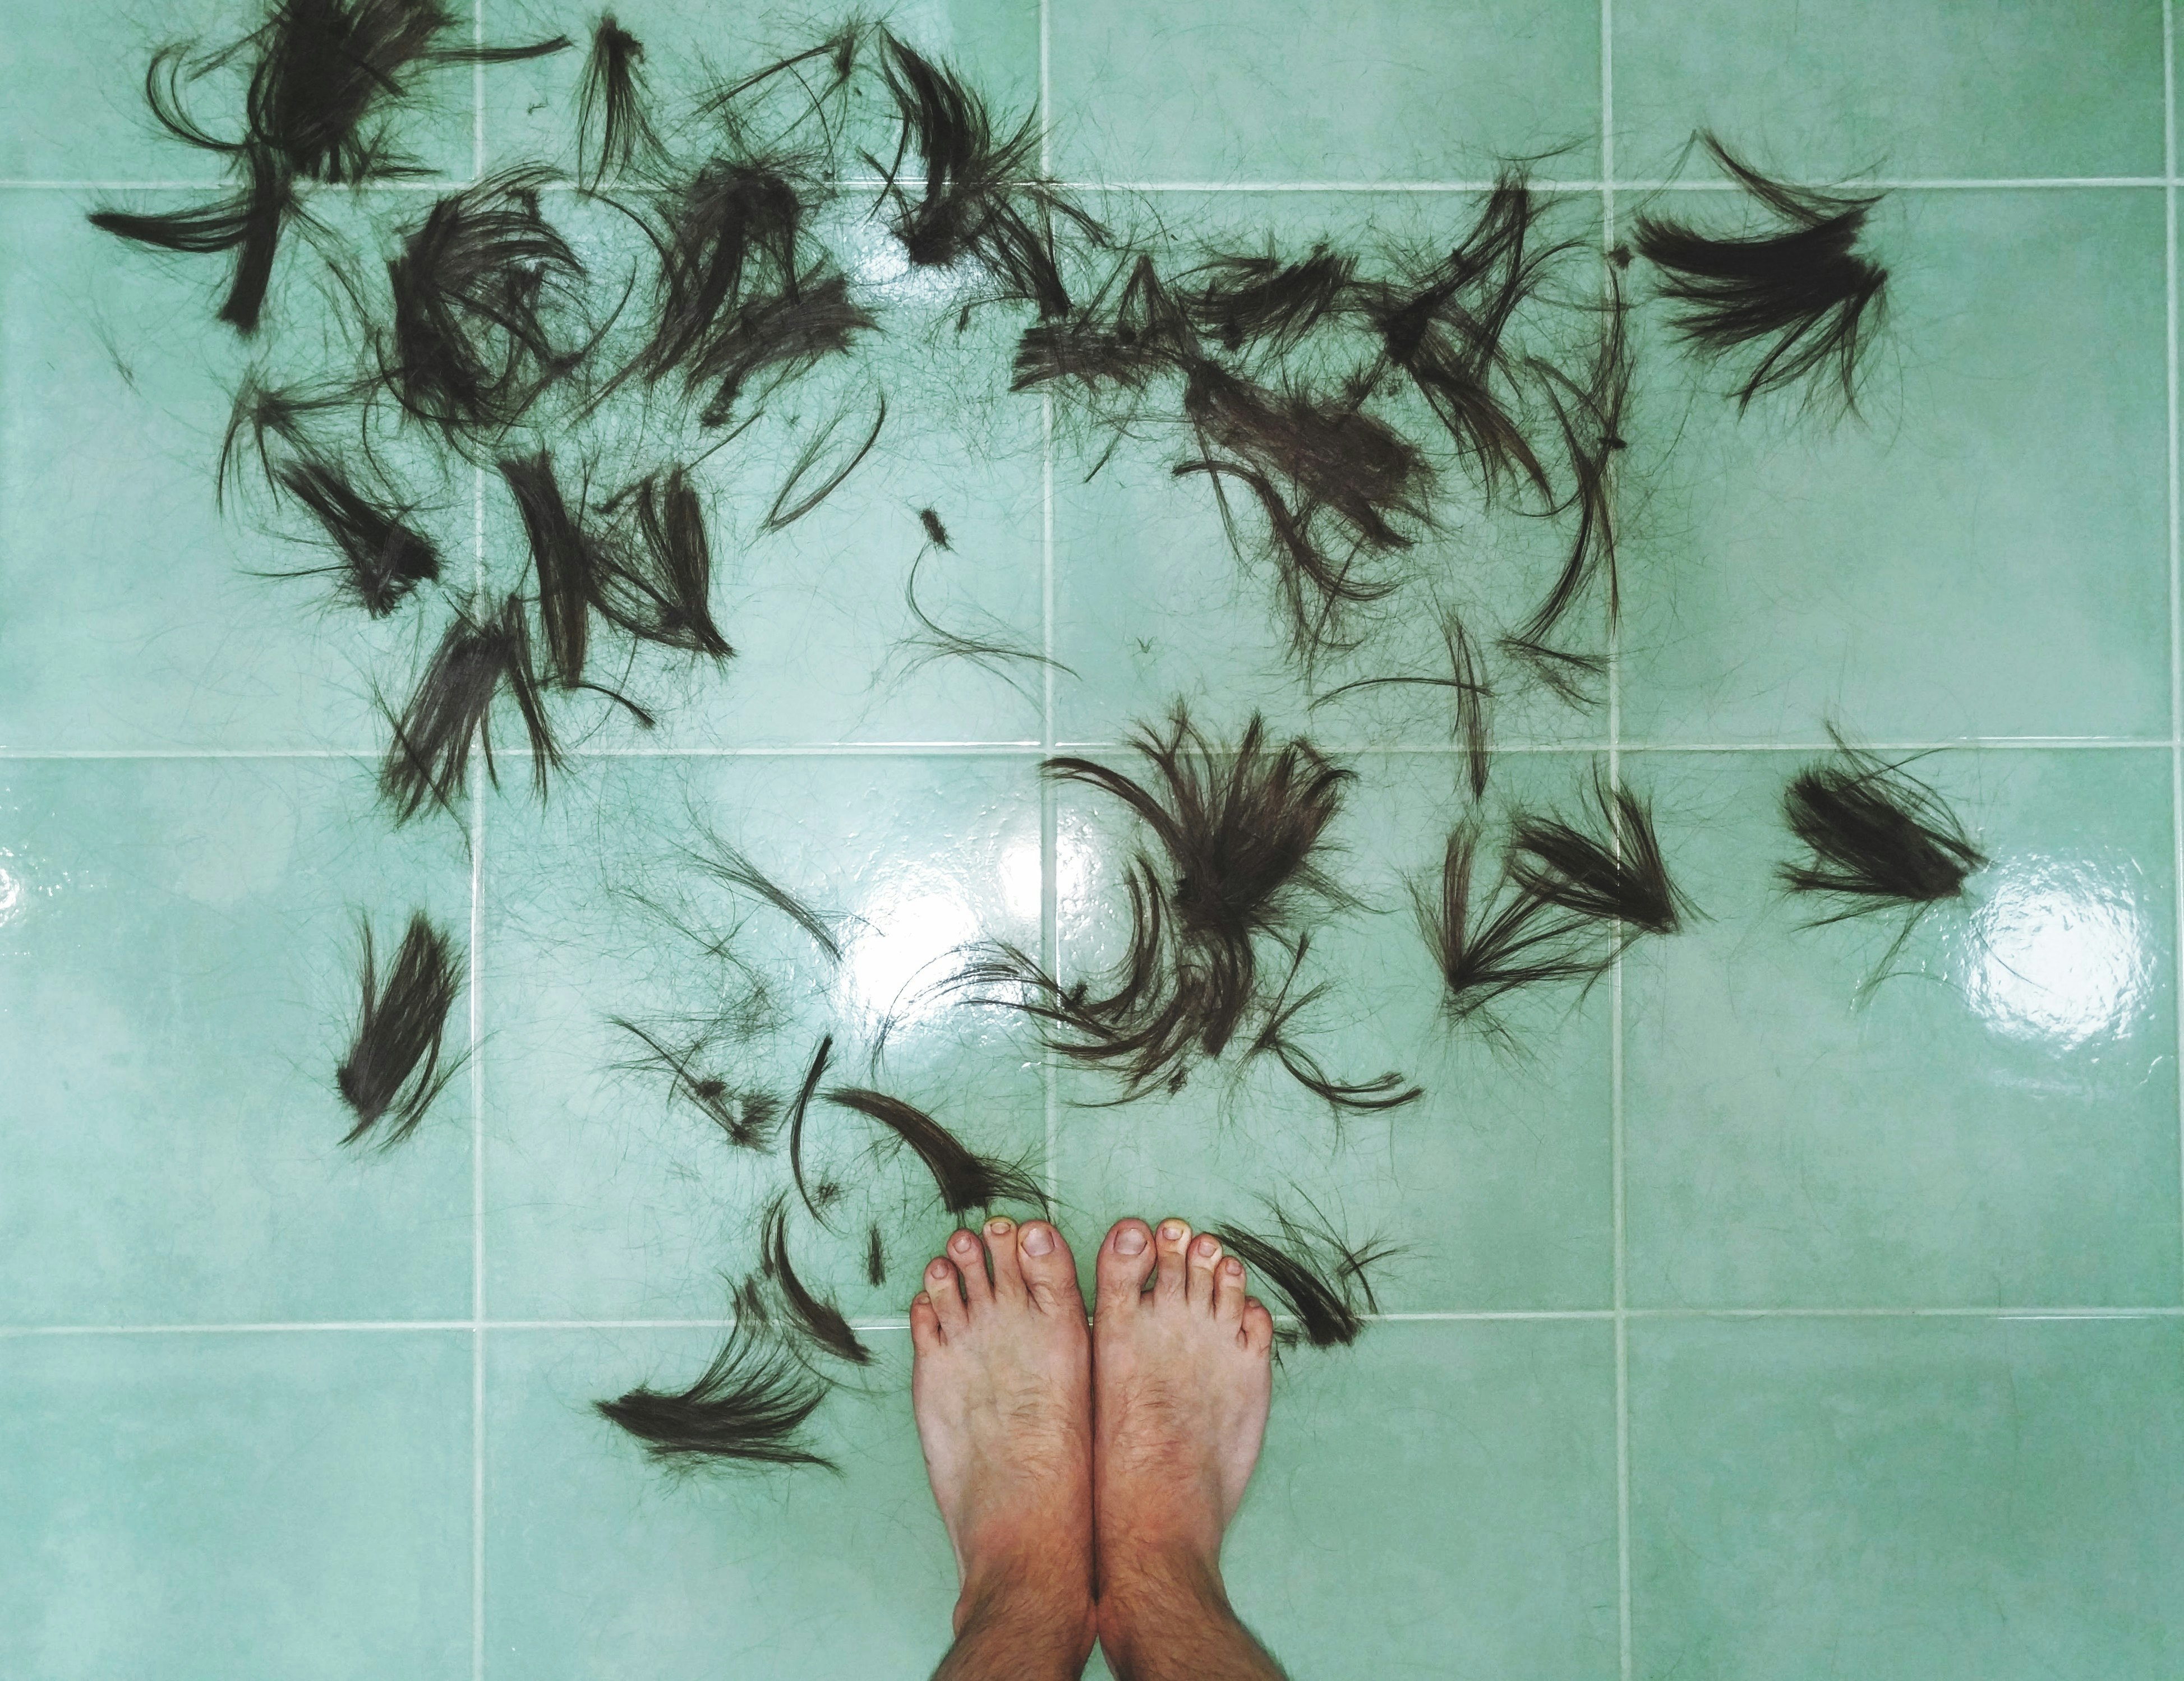 hair on tiled floor near person's feet